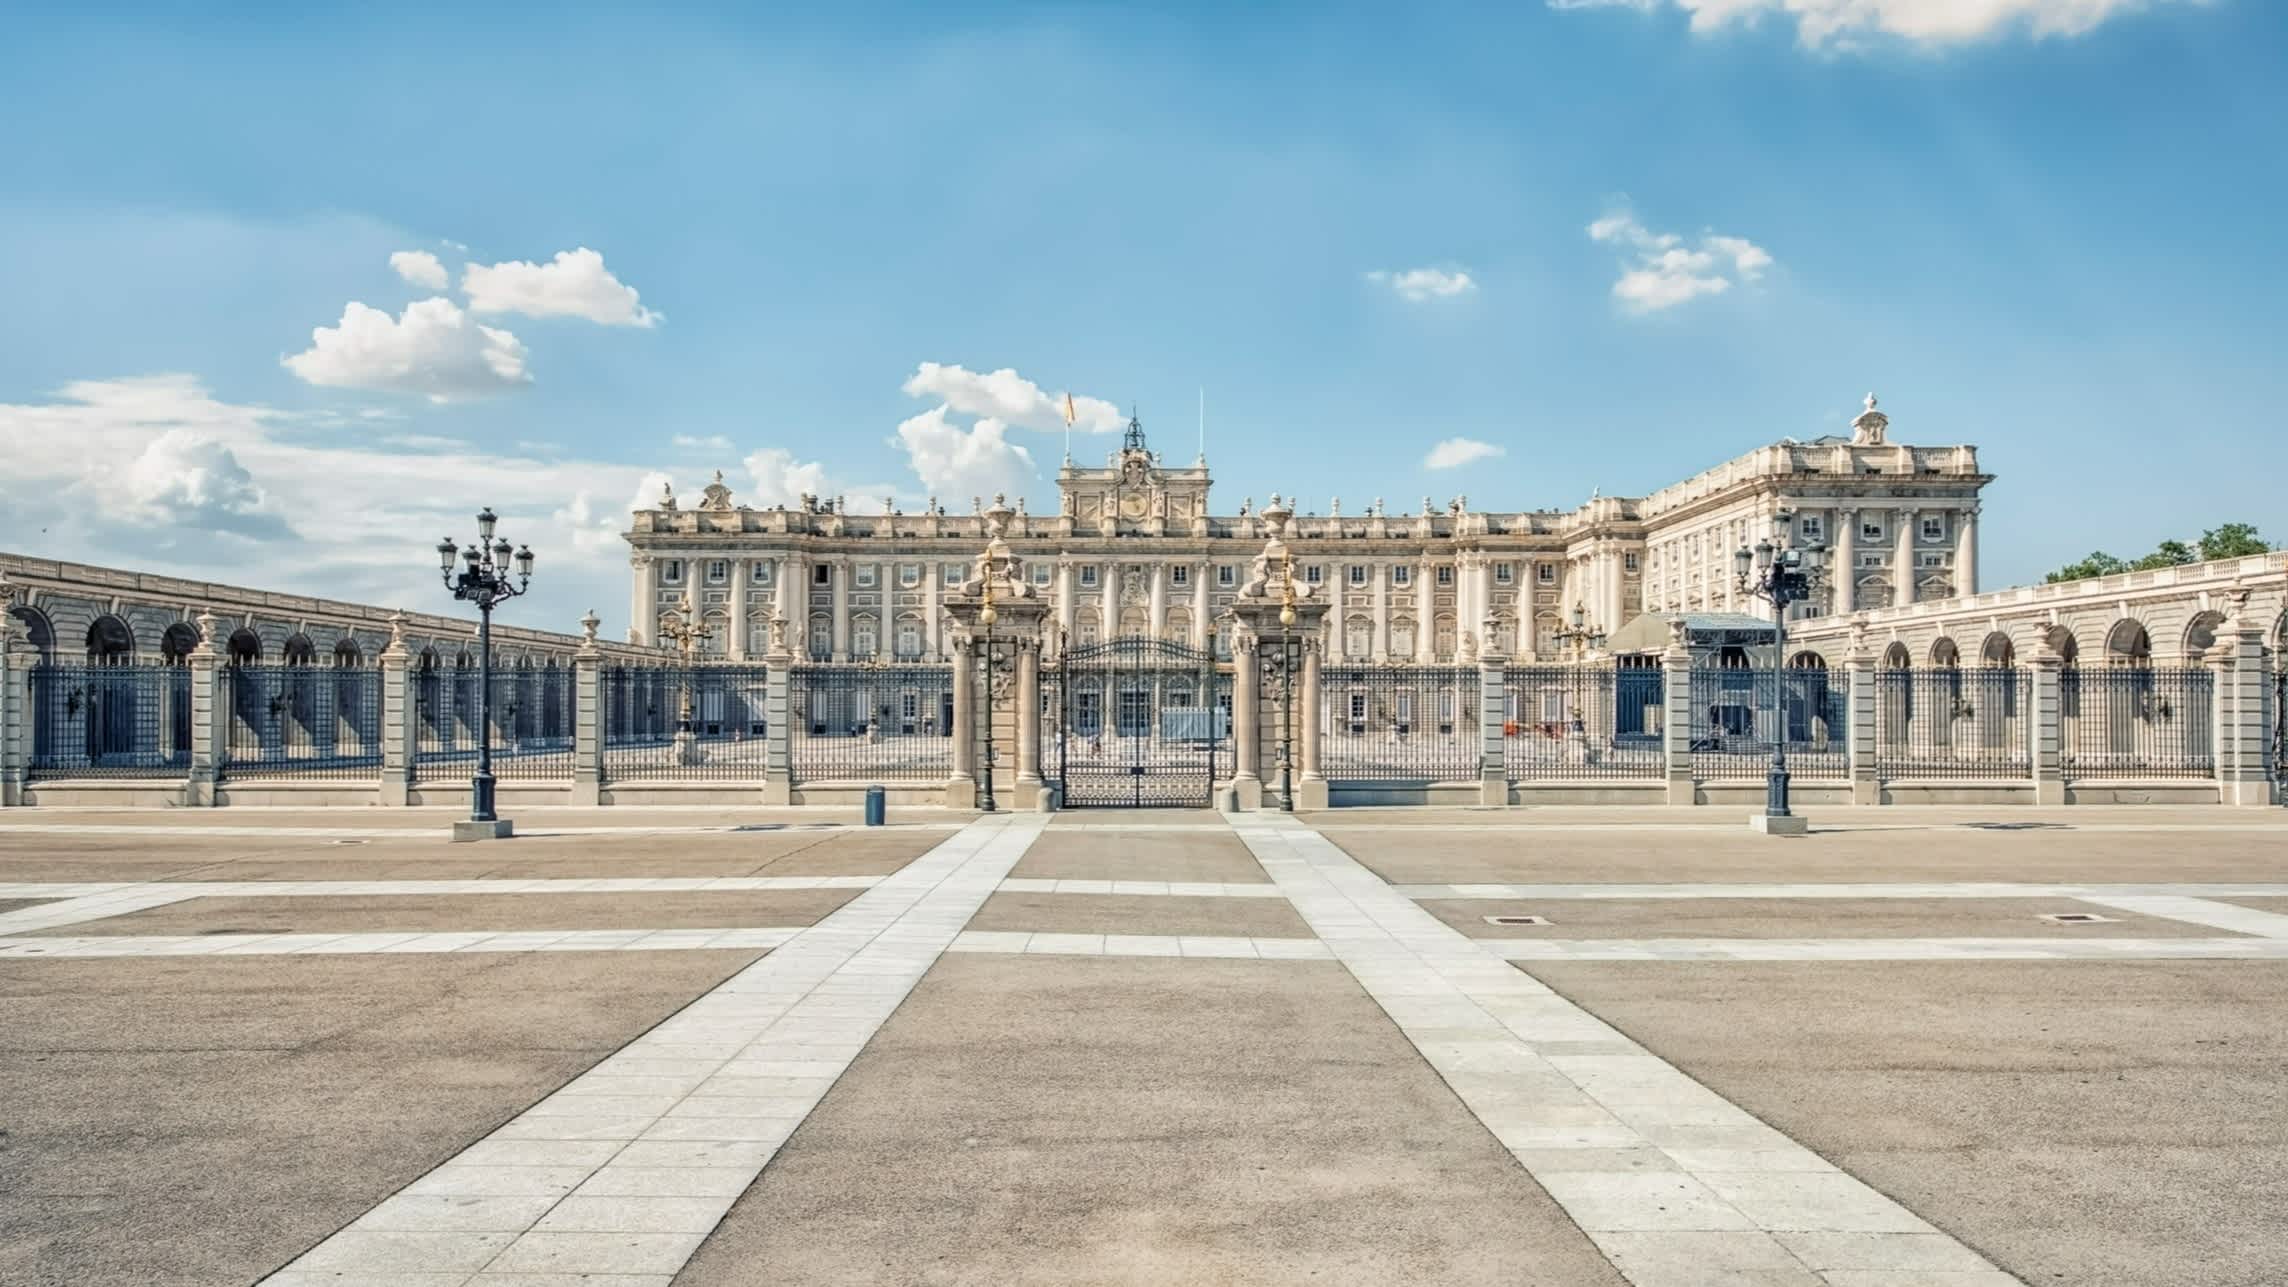 Königspalast von Madrid, Spanien

